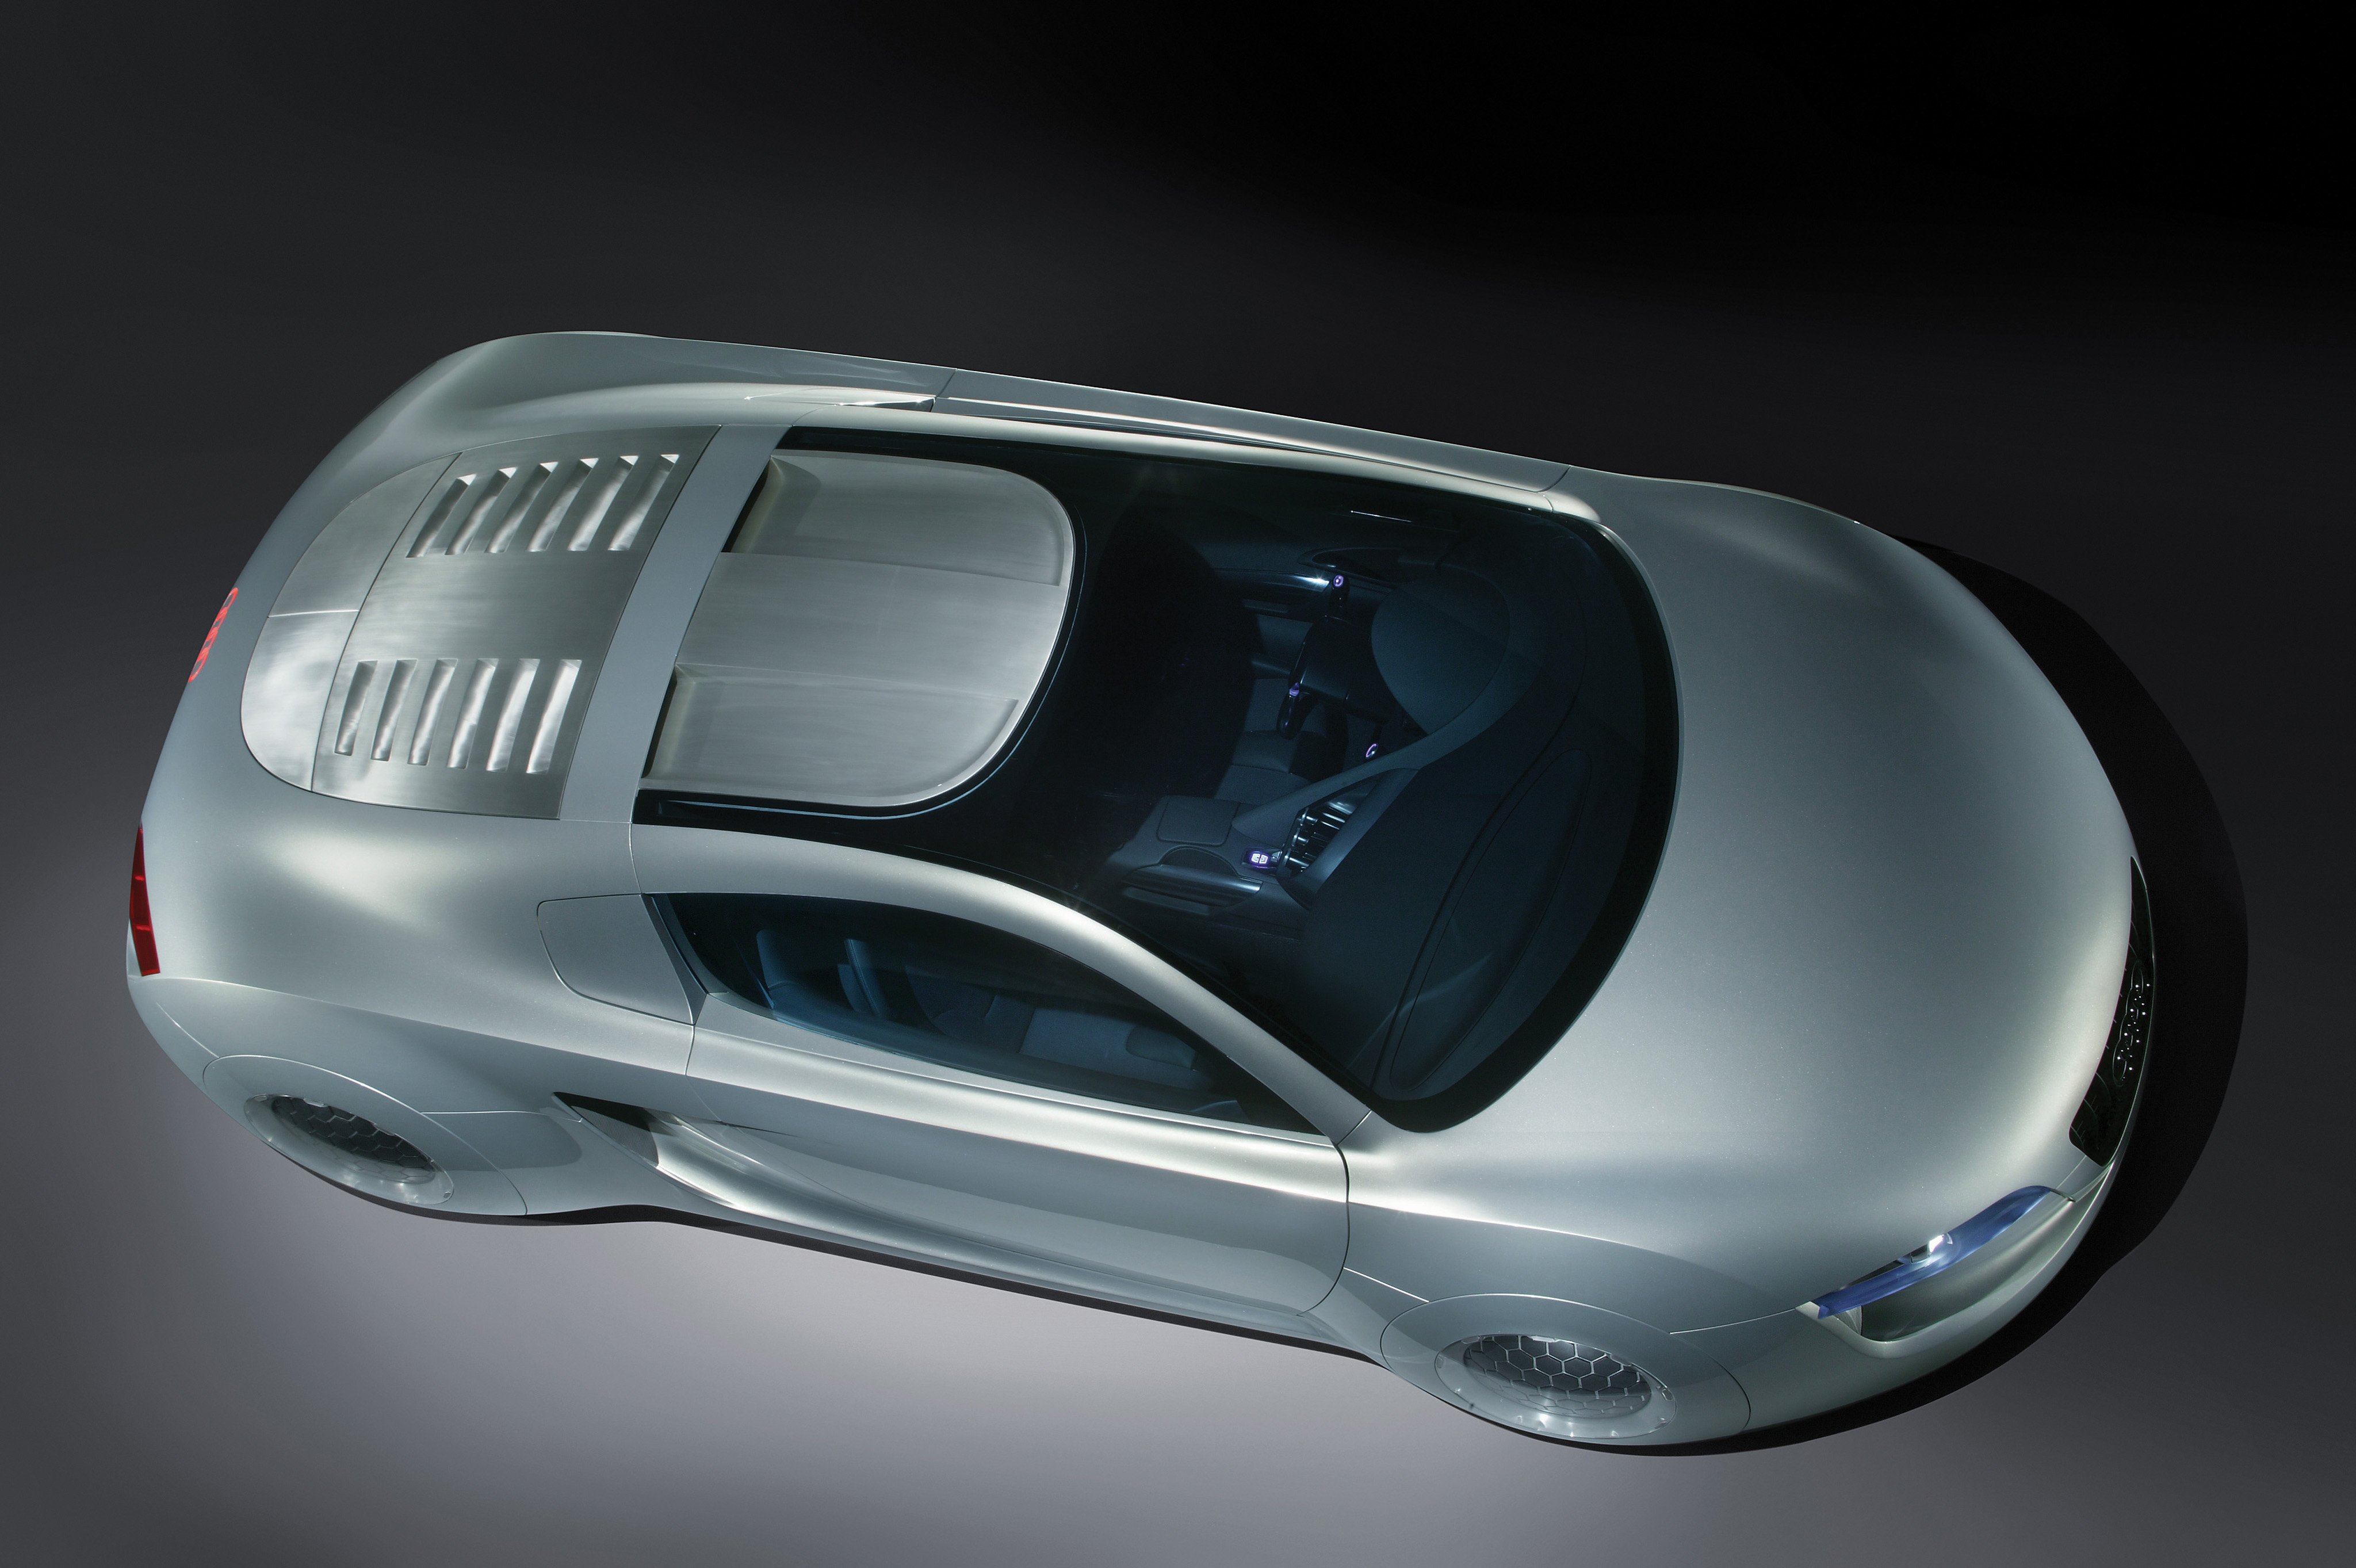 2004, Audi, Rsq, Concept, Supercar, I robot, 1irobot Wallpaper